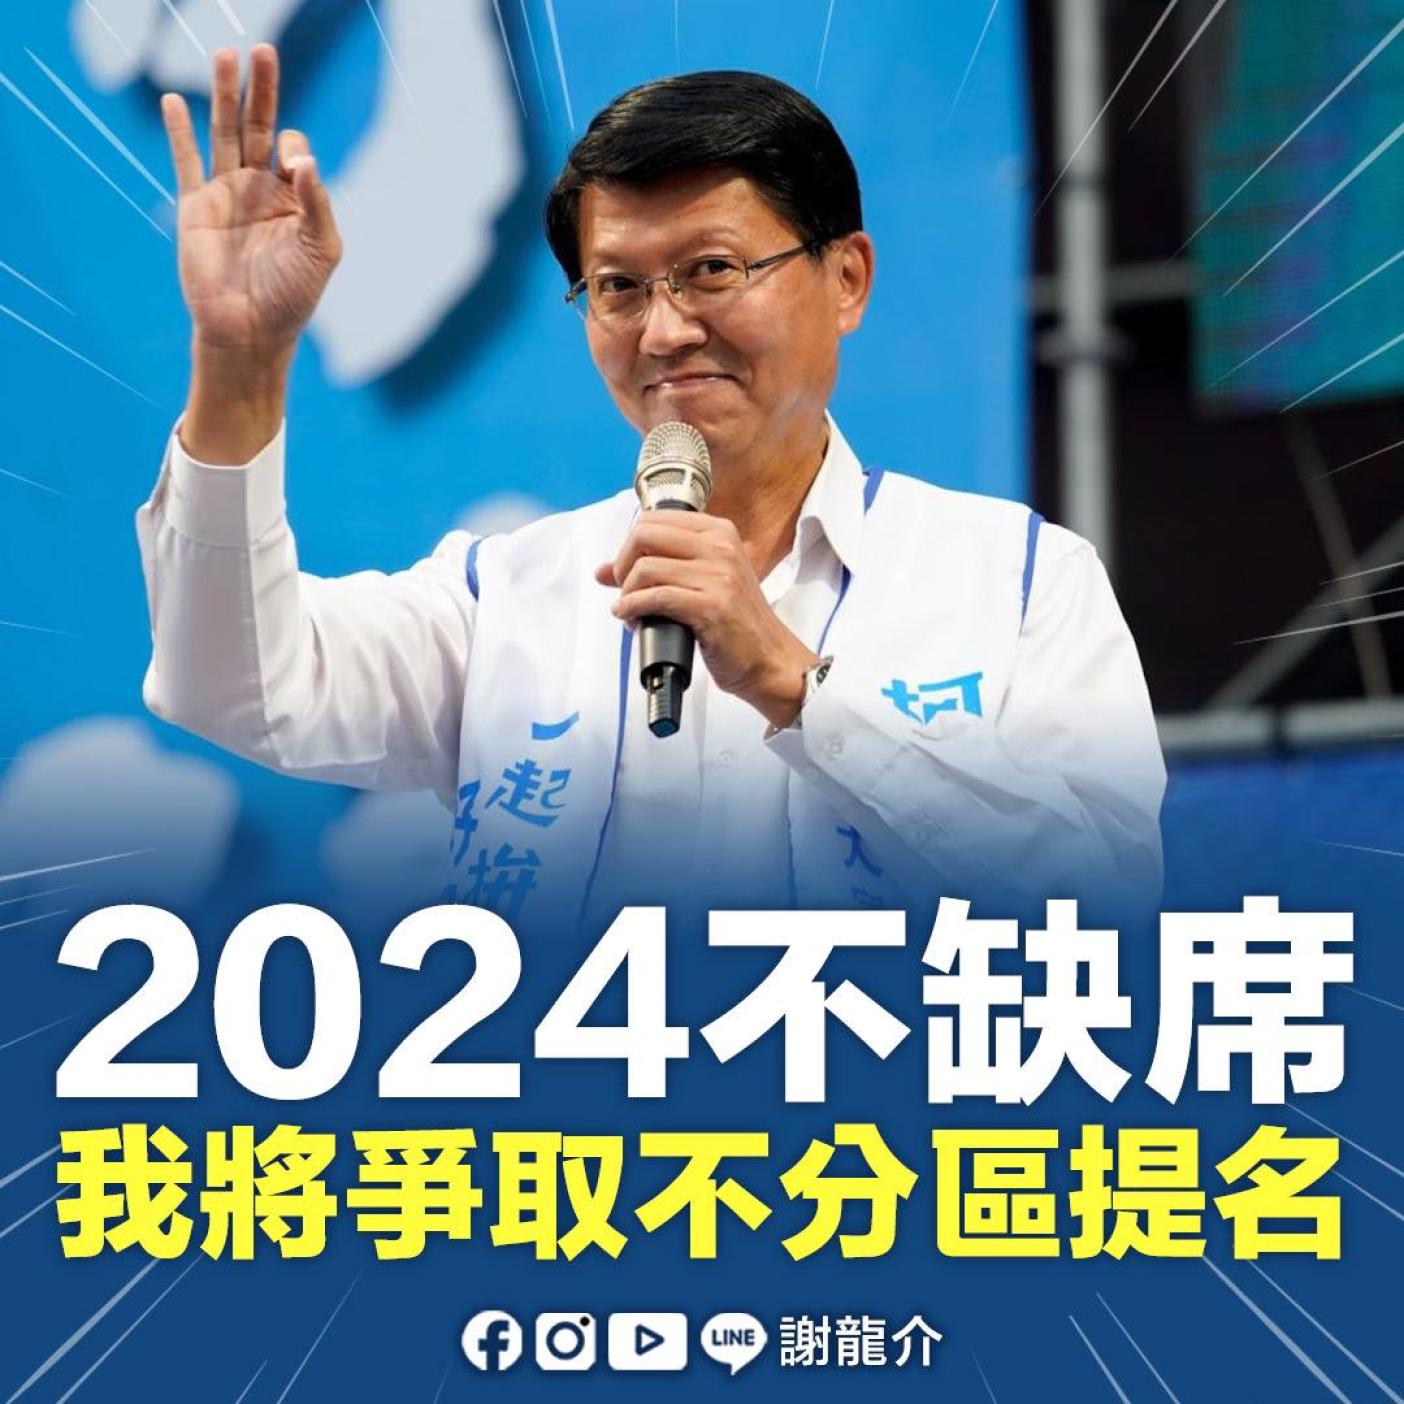 台南市前議員謝龍介表態爭取2024國民黨不分區立委。翻攝謝龍介臉書